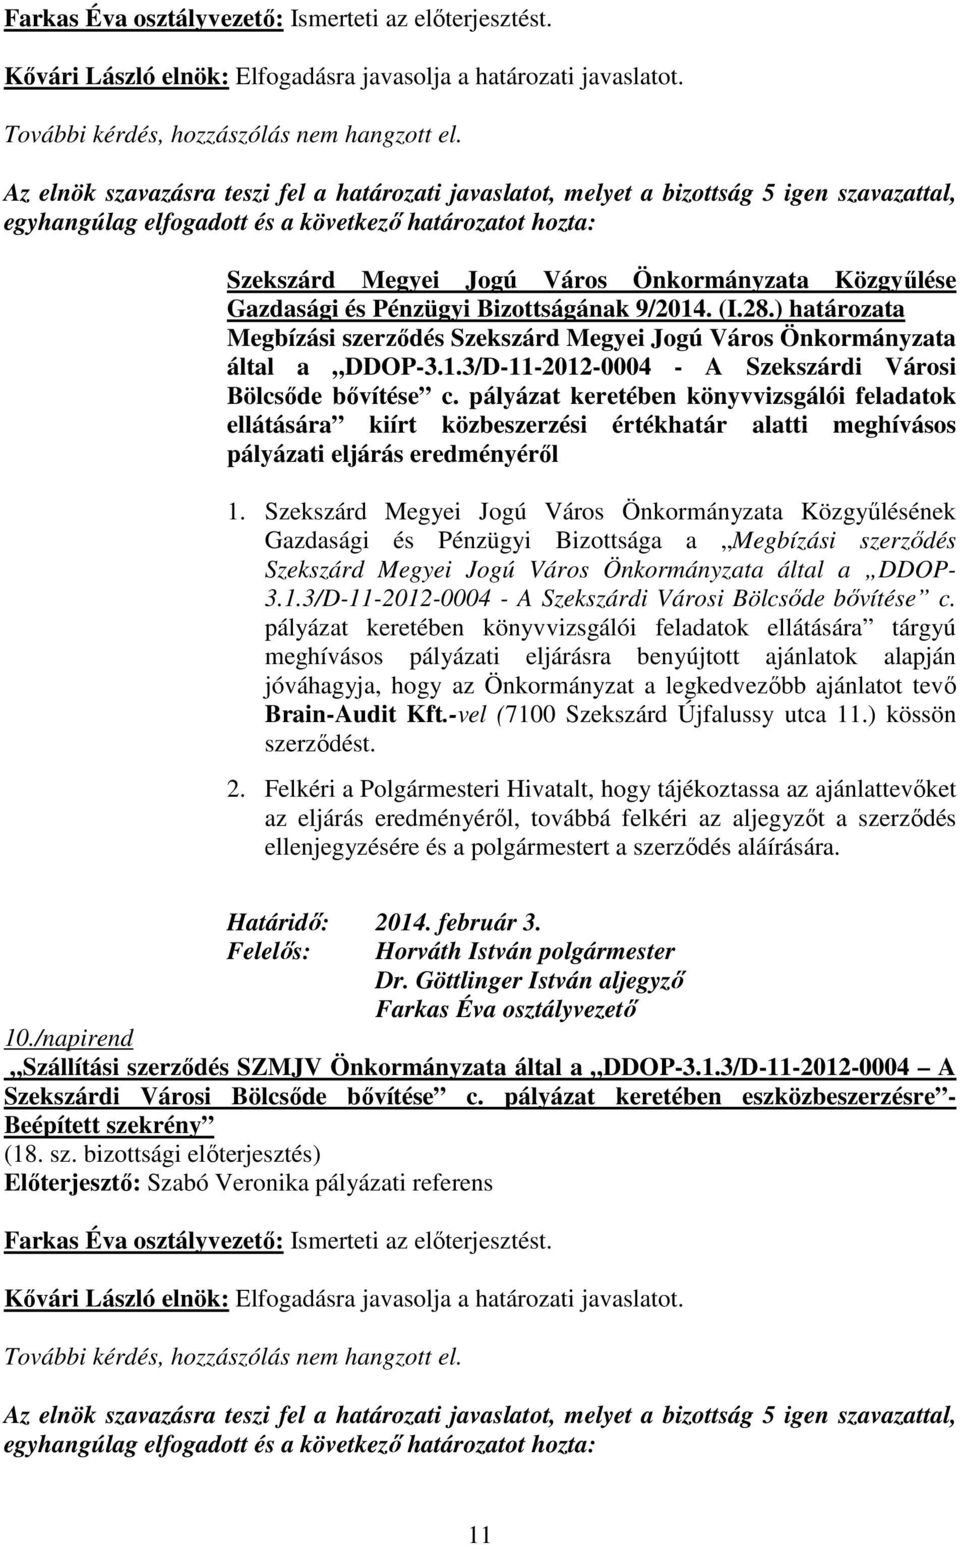 ) határozata Megbízási szerzıdés Szekszárd Megyei Jogú Város Önkormányzata által a DDOP-3.1.3/D-11-2012-0004 - A Szekszárdi Városi Bölcsıde bıvítése c.